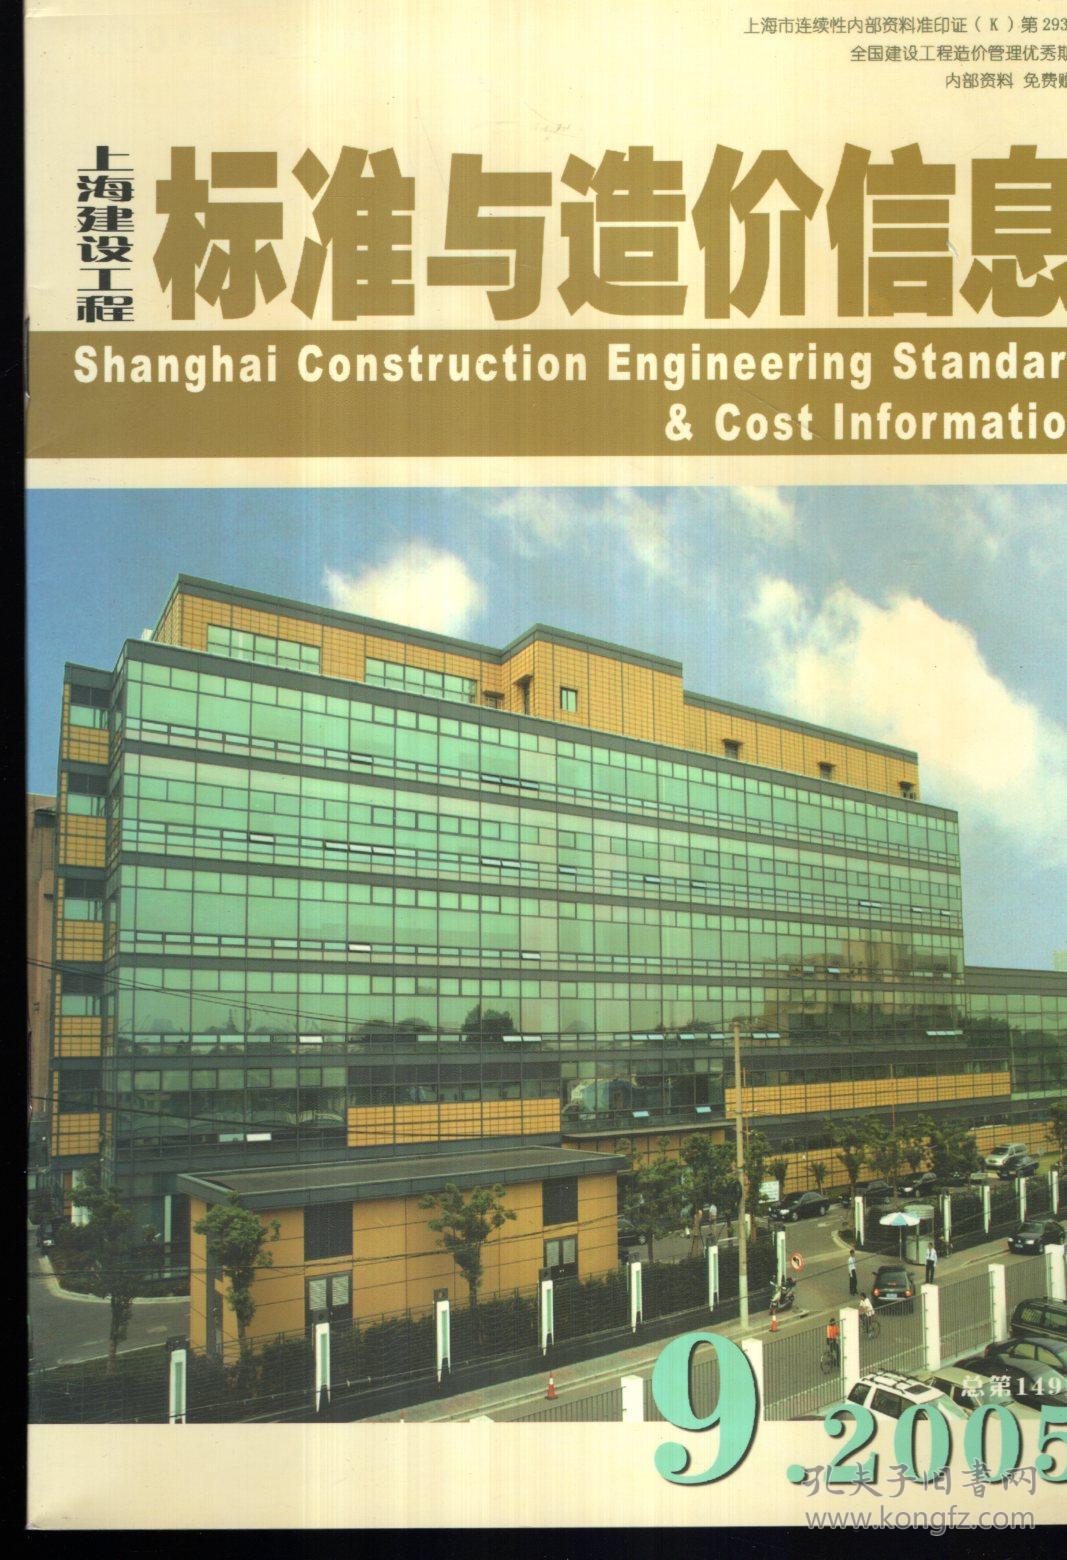 上海建设工程标准与造价信息副刊.市场信息2005年第10期 上海建设工程标准与造价信息2005年第9 12期.总第149 152 82期.3册合售